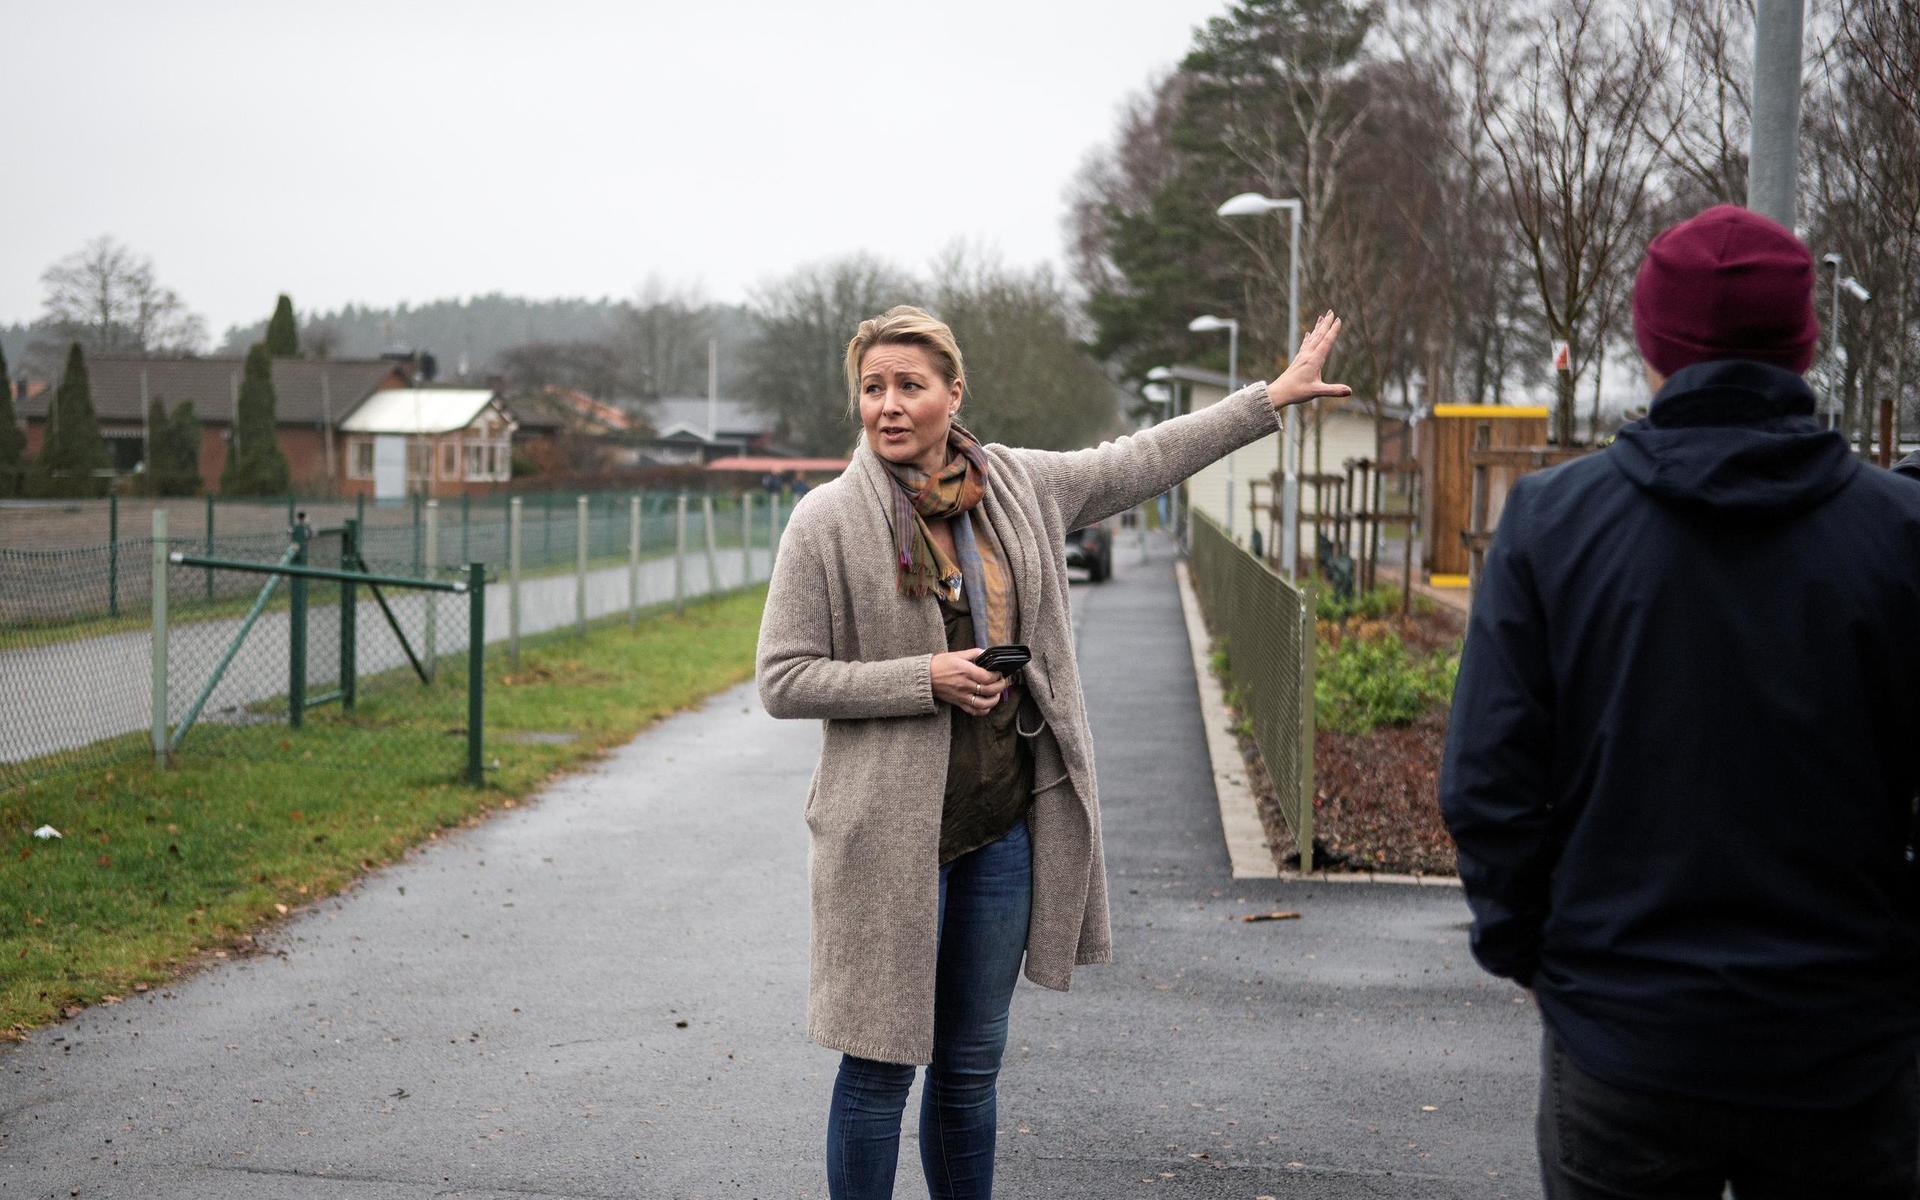 Utbildningschef Malin Lindberg försökte lugna oroliga föräldrar som samlats utanför skolan.